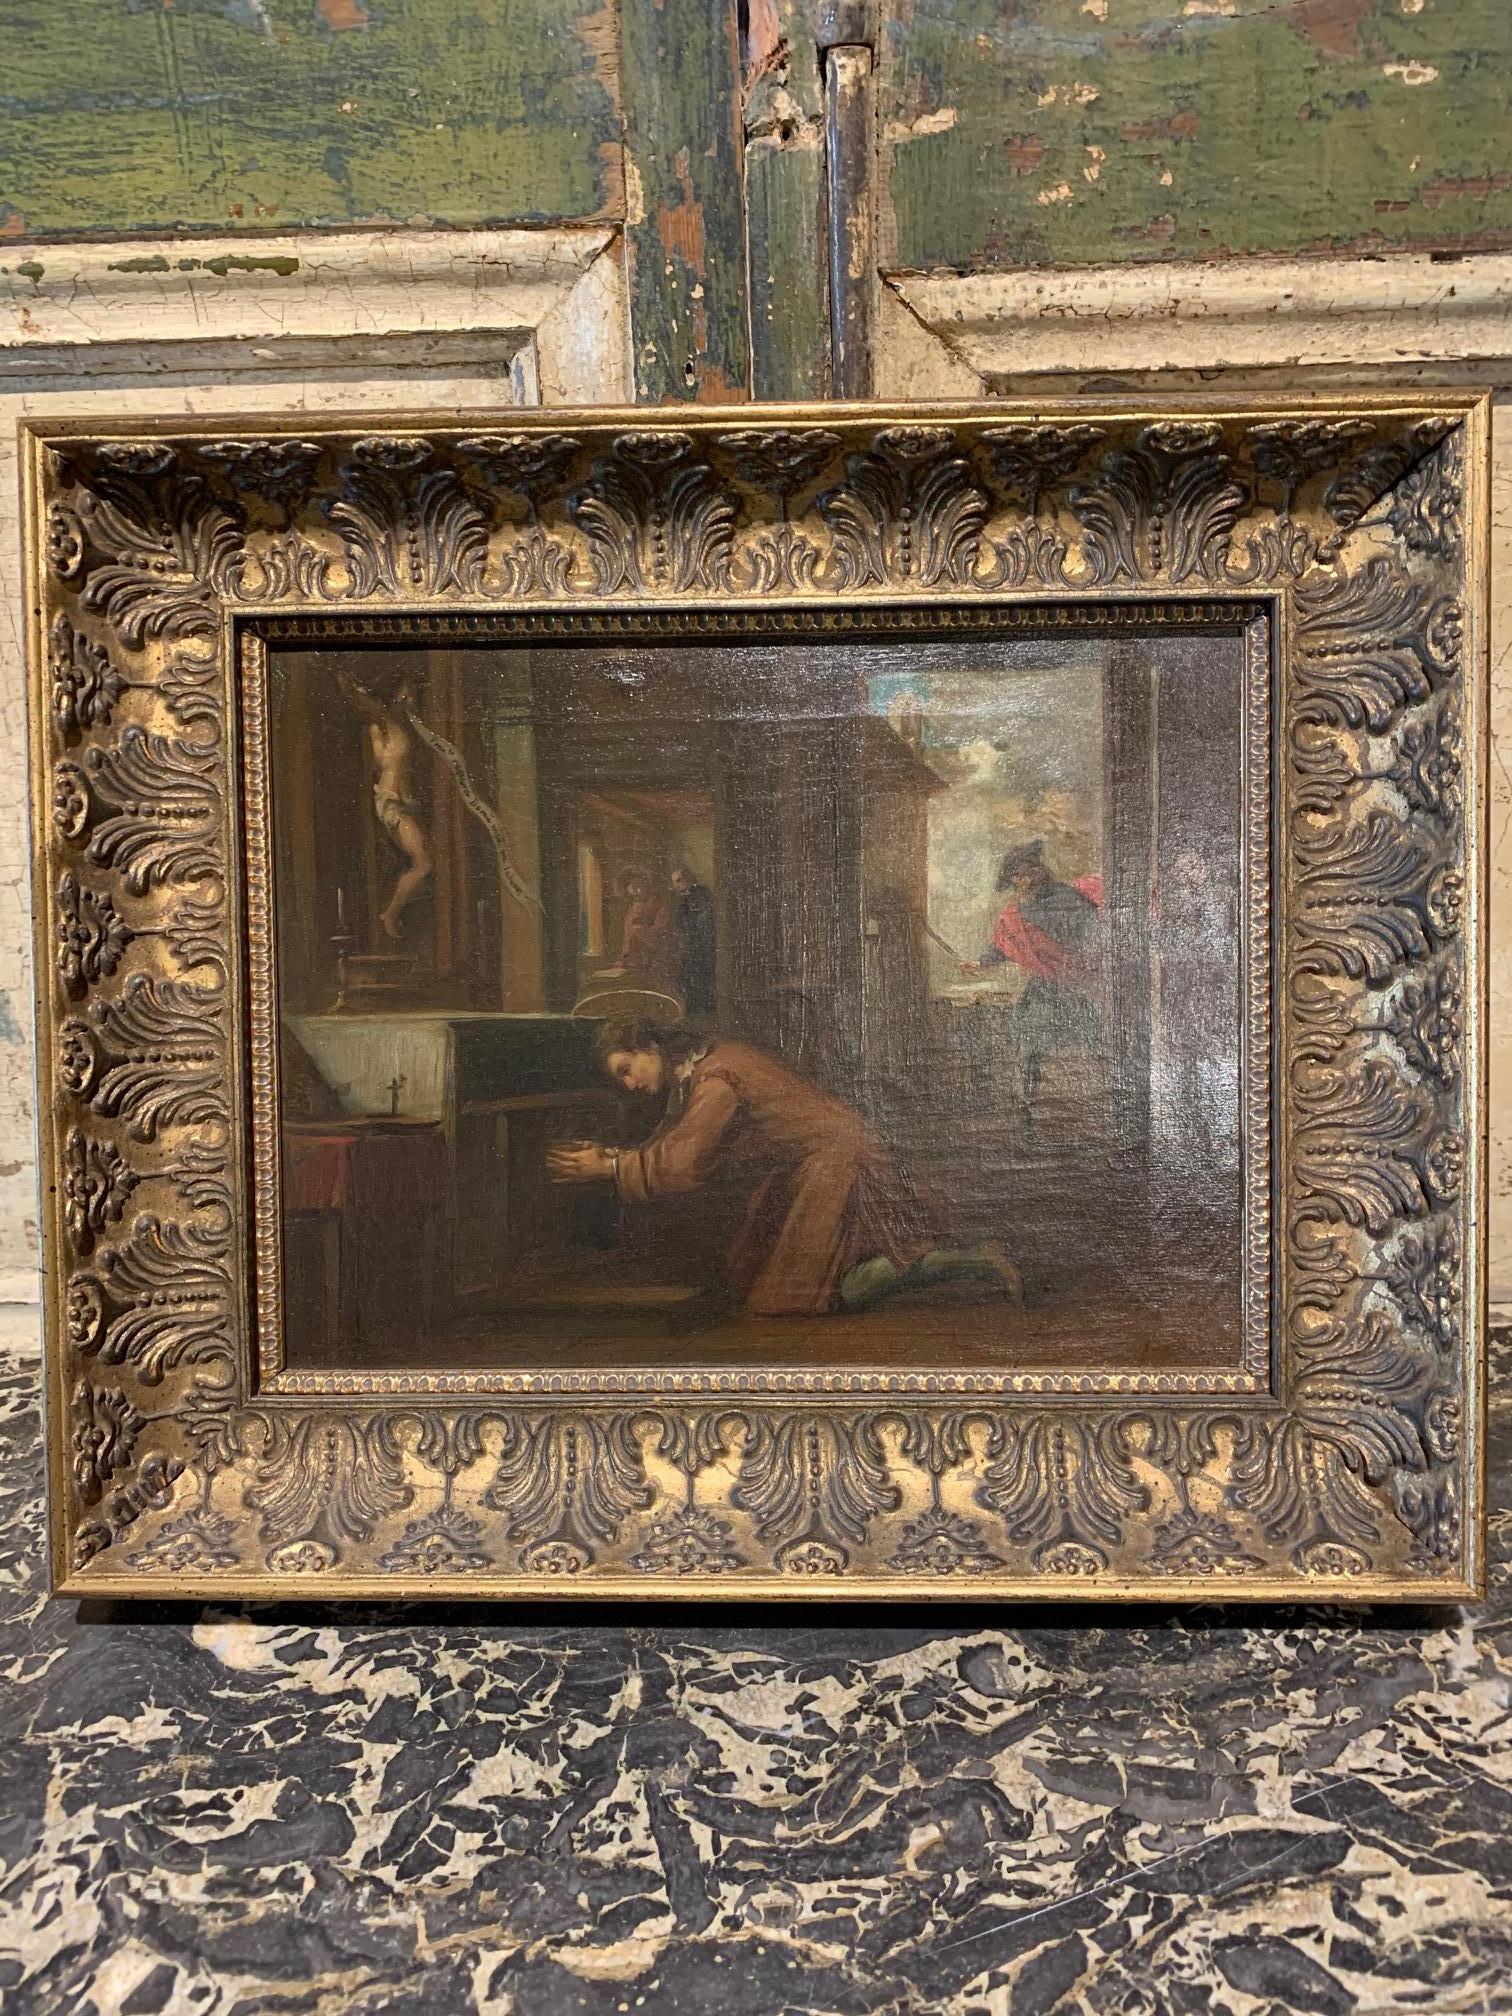 Très belle peinture à l'huile sur toile du milieu du 19e siècle représentant un jeune saint François priant devant un autel, vers 1860. L'artiste est Juaquin Vayreda (1843-1894). Ce tableau est la copie d'une composition du peintre catalan Antoni